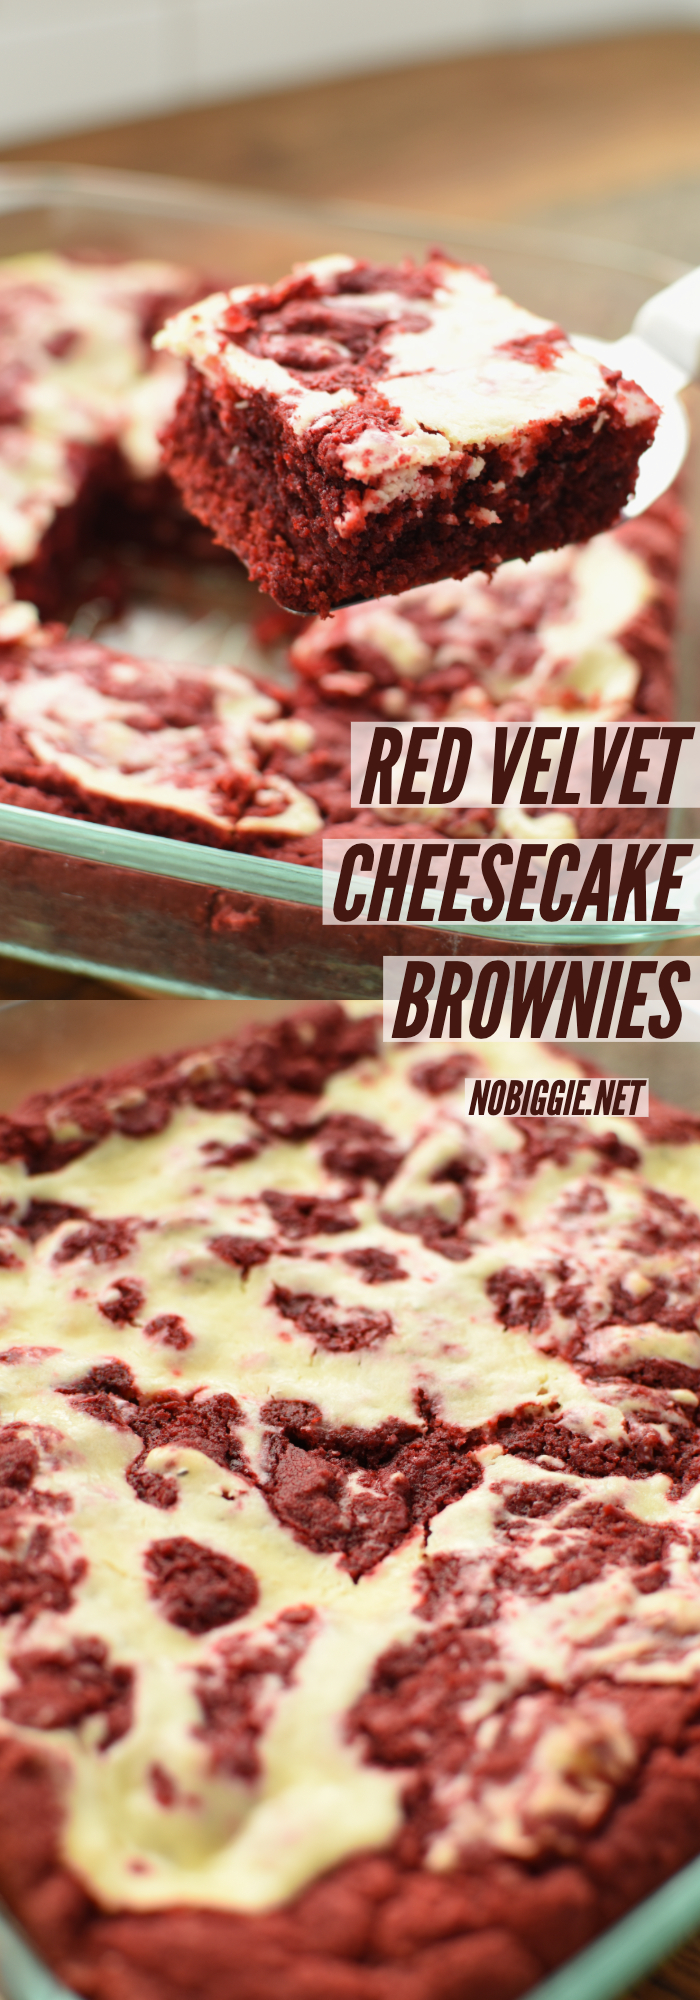 Red Velvet Cheesecake Brownies | NoBiggie.net